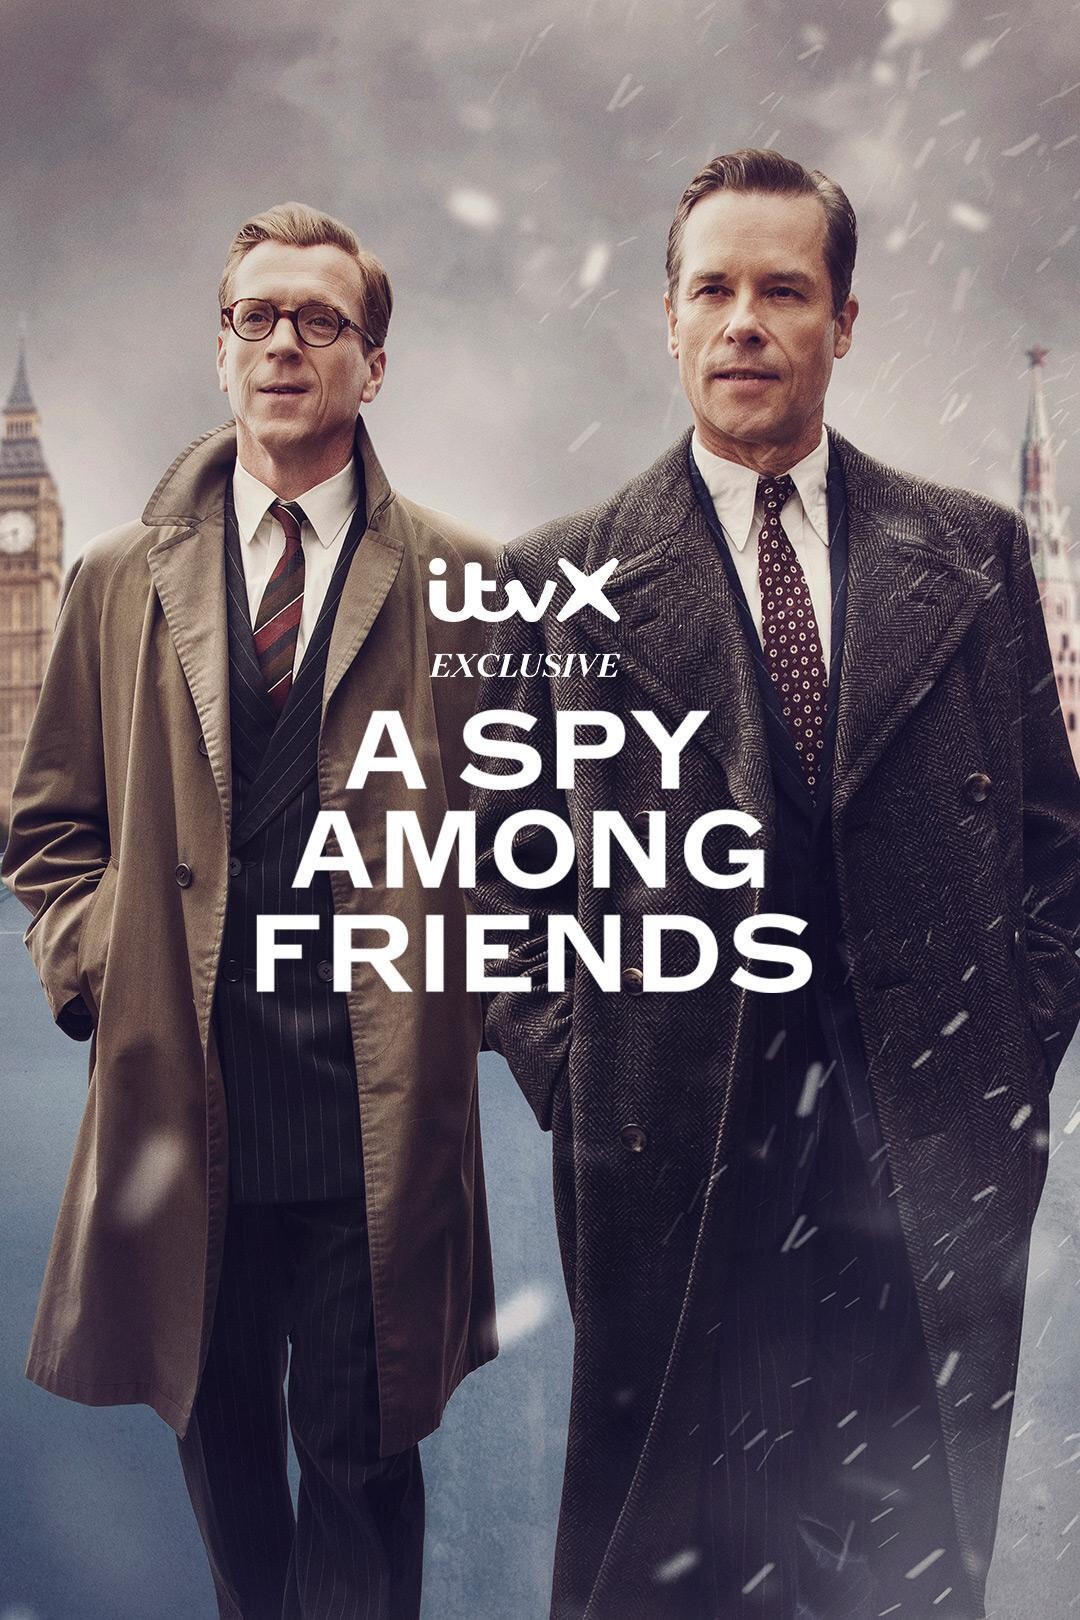 [敌友难辨 A Spy Among Friends 第一季][全06集][英语中字]4K|1080P高清